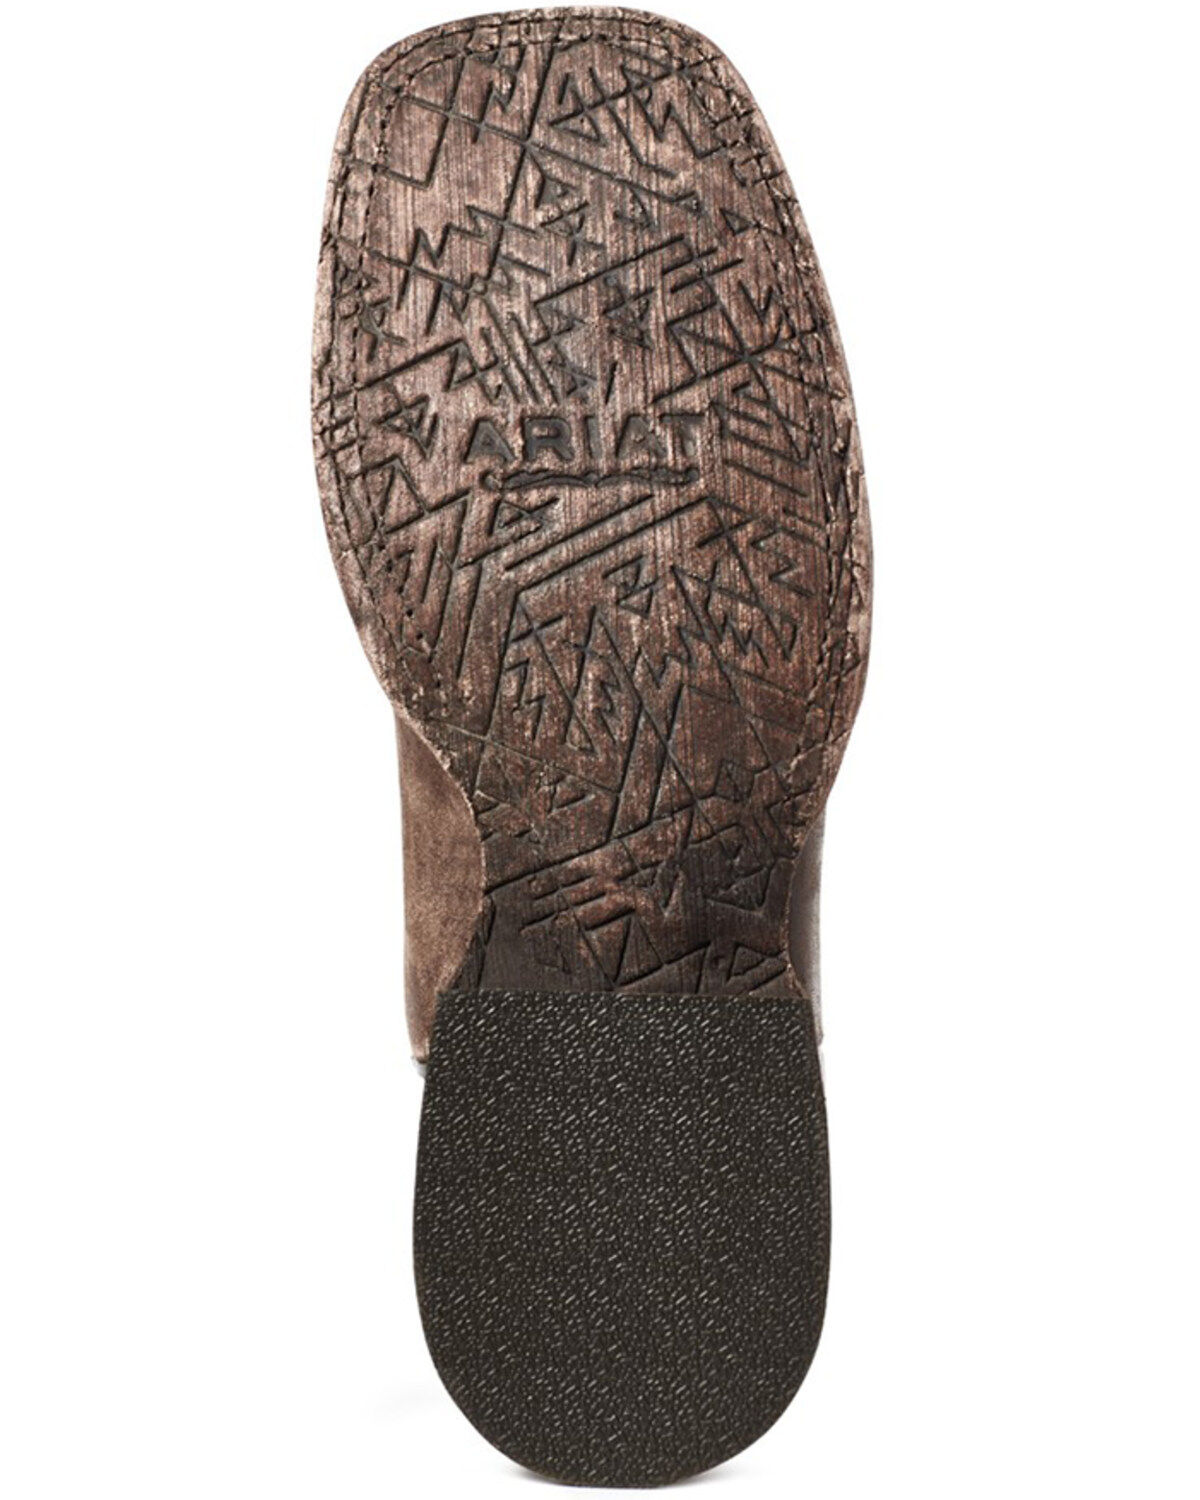 Stiefel Ariat Women´s Savannah Boots Western Boot Stiefeletten wasserdicht 